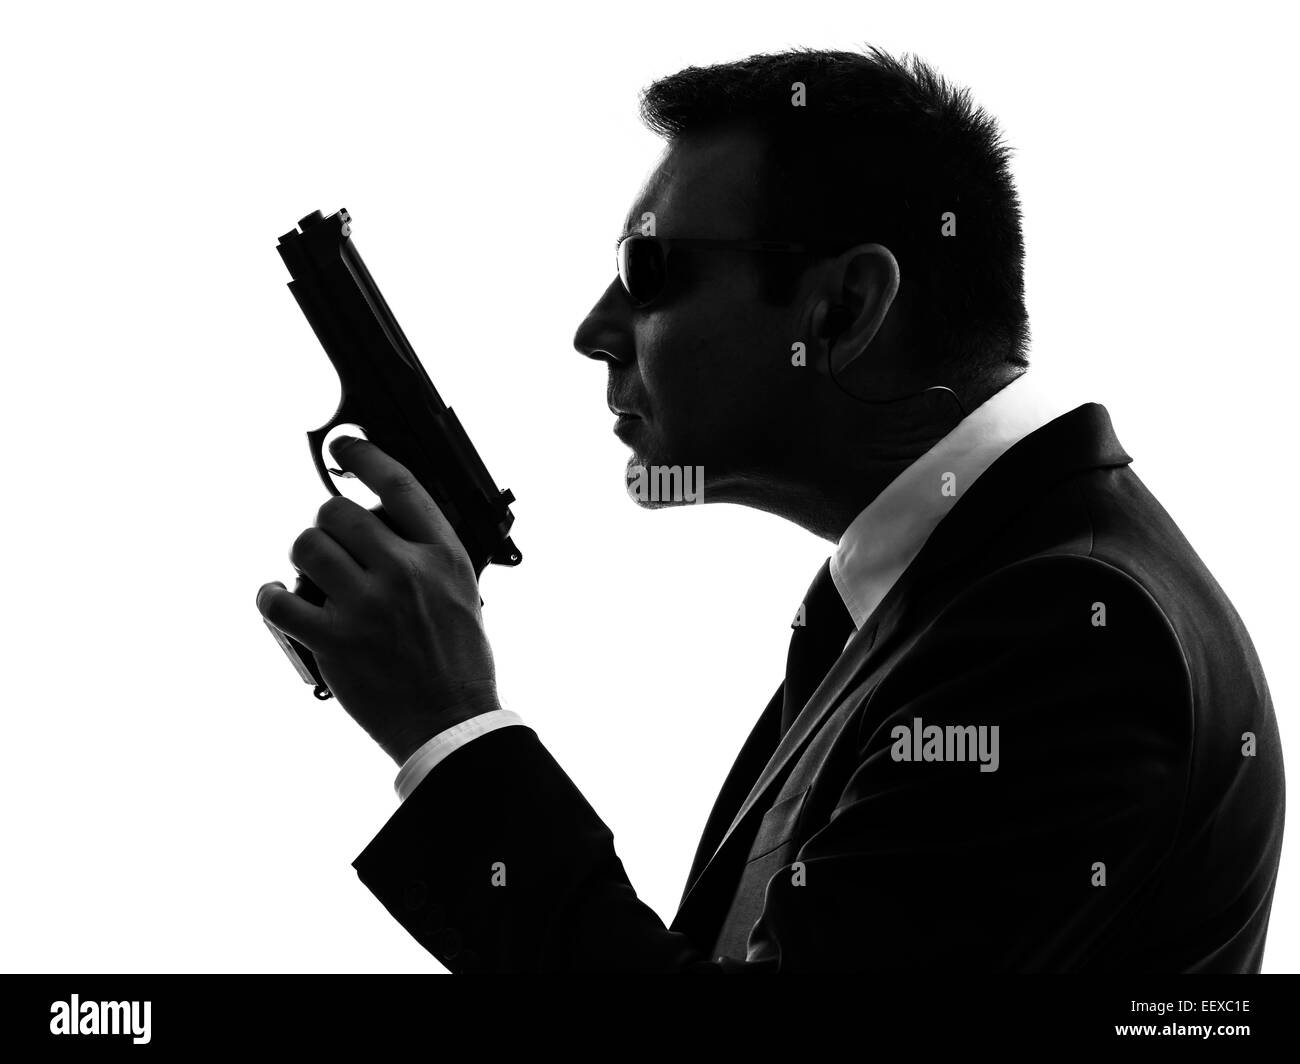 Un service secret agent de sécurité garde du corps homme en silhouette sur fond blanc Banque D'Images